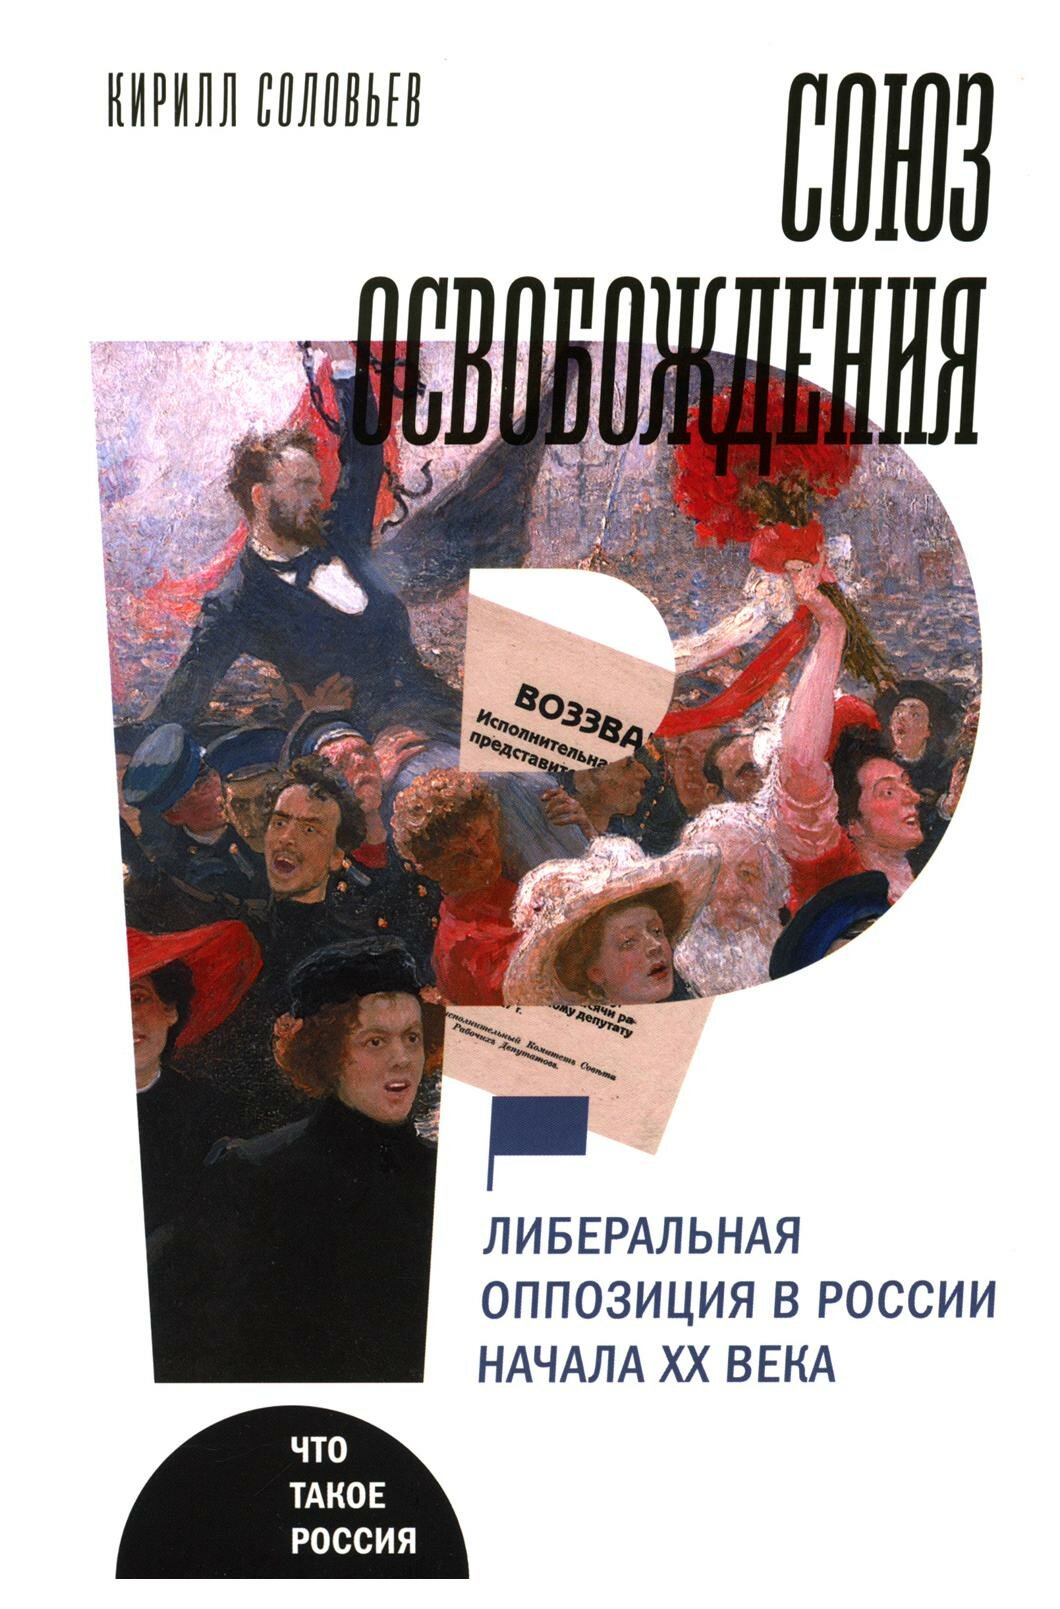 Союз освобождения: либеральная оппозиция в России - фото №1